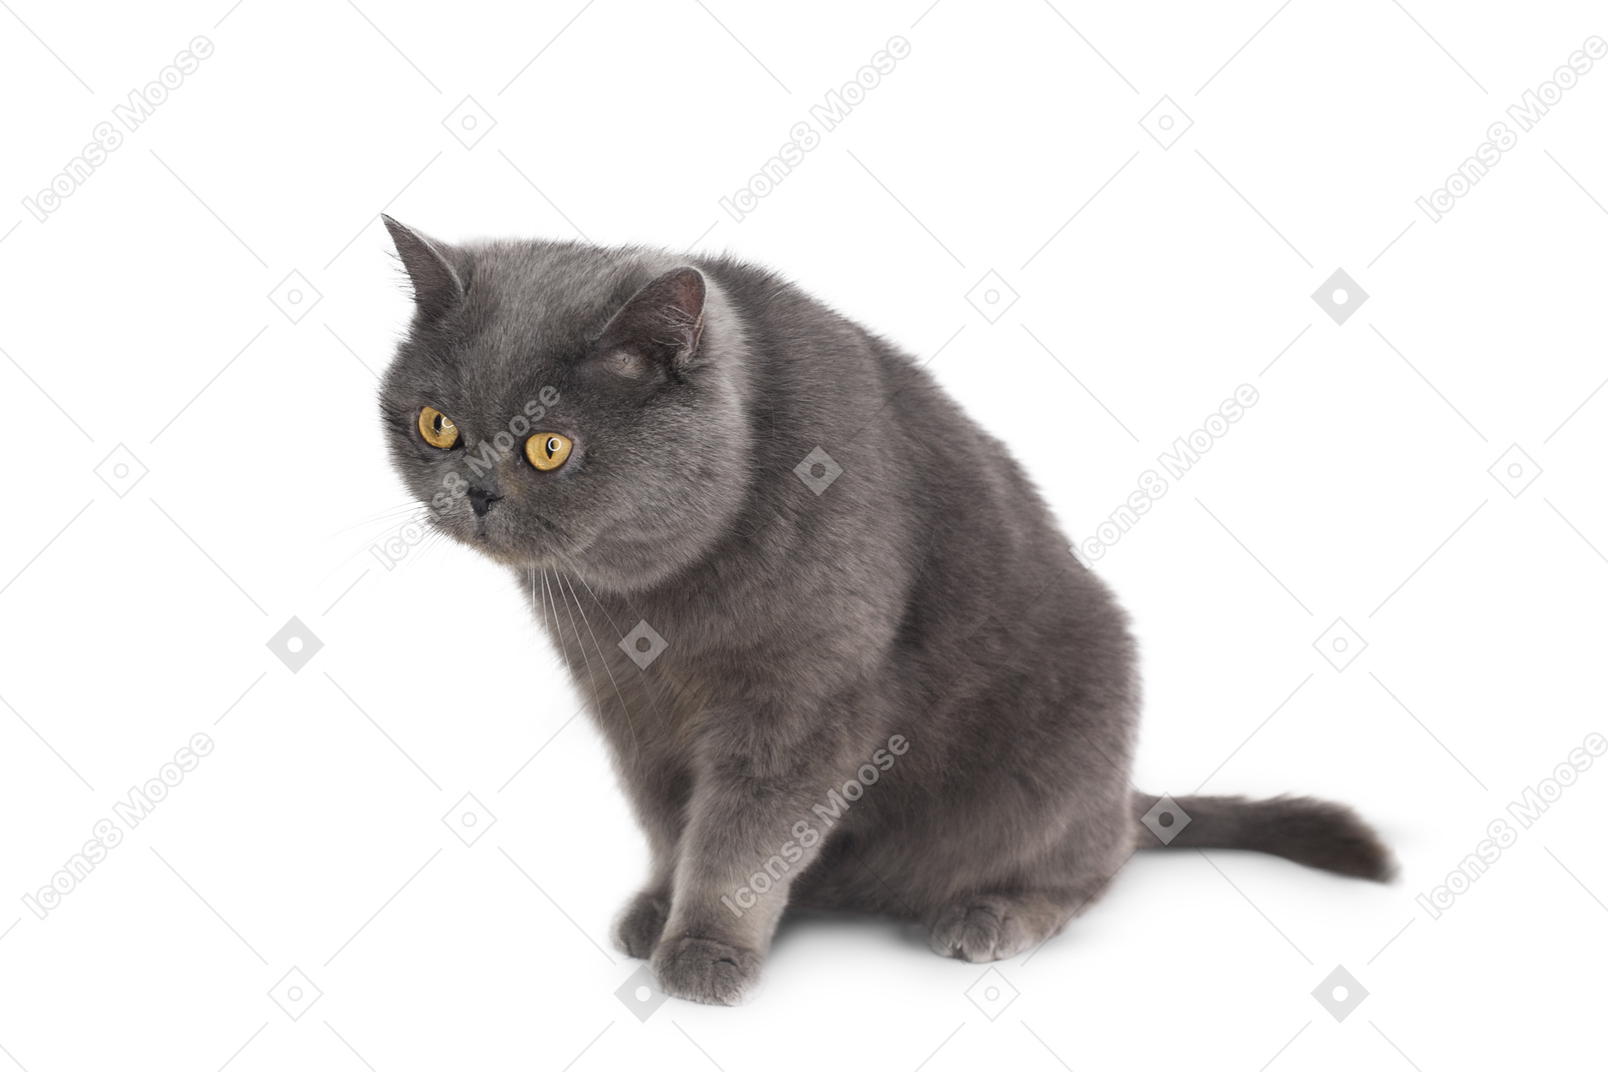 Grey cat